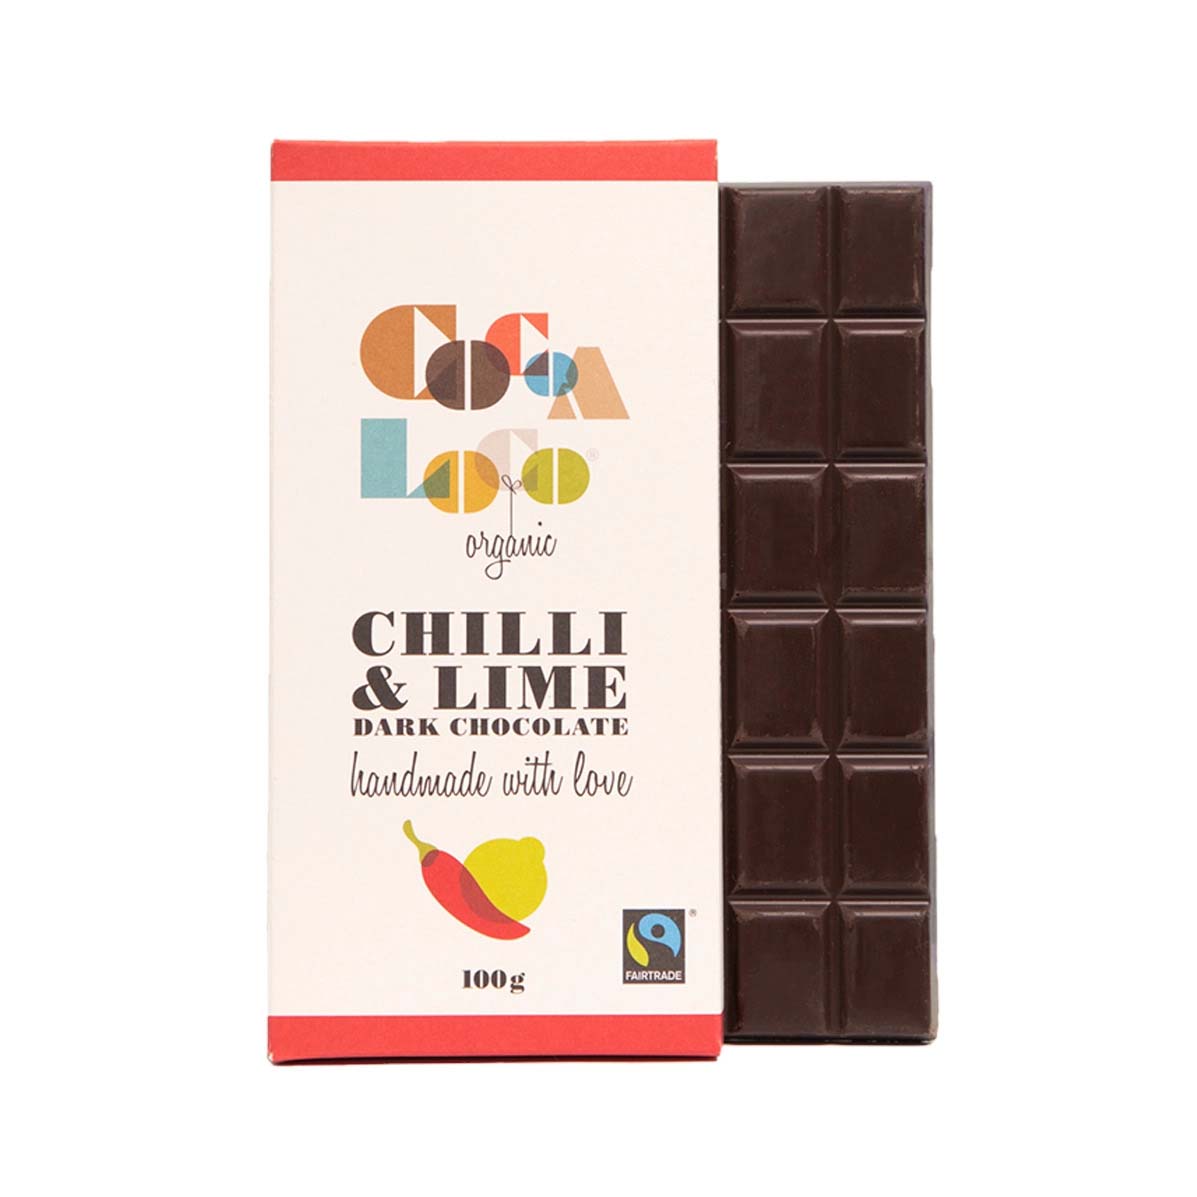 Cocoa Loco Dark Chocolate, Chilli & Lime Bar - 100g